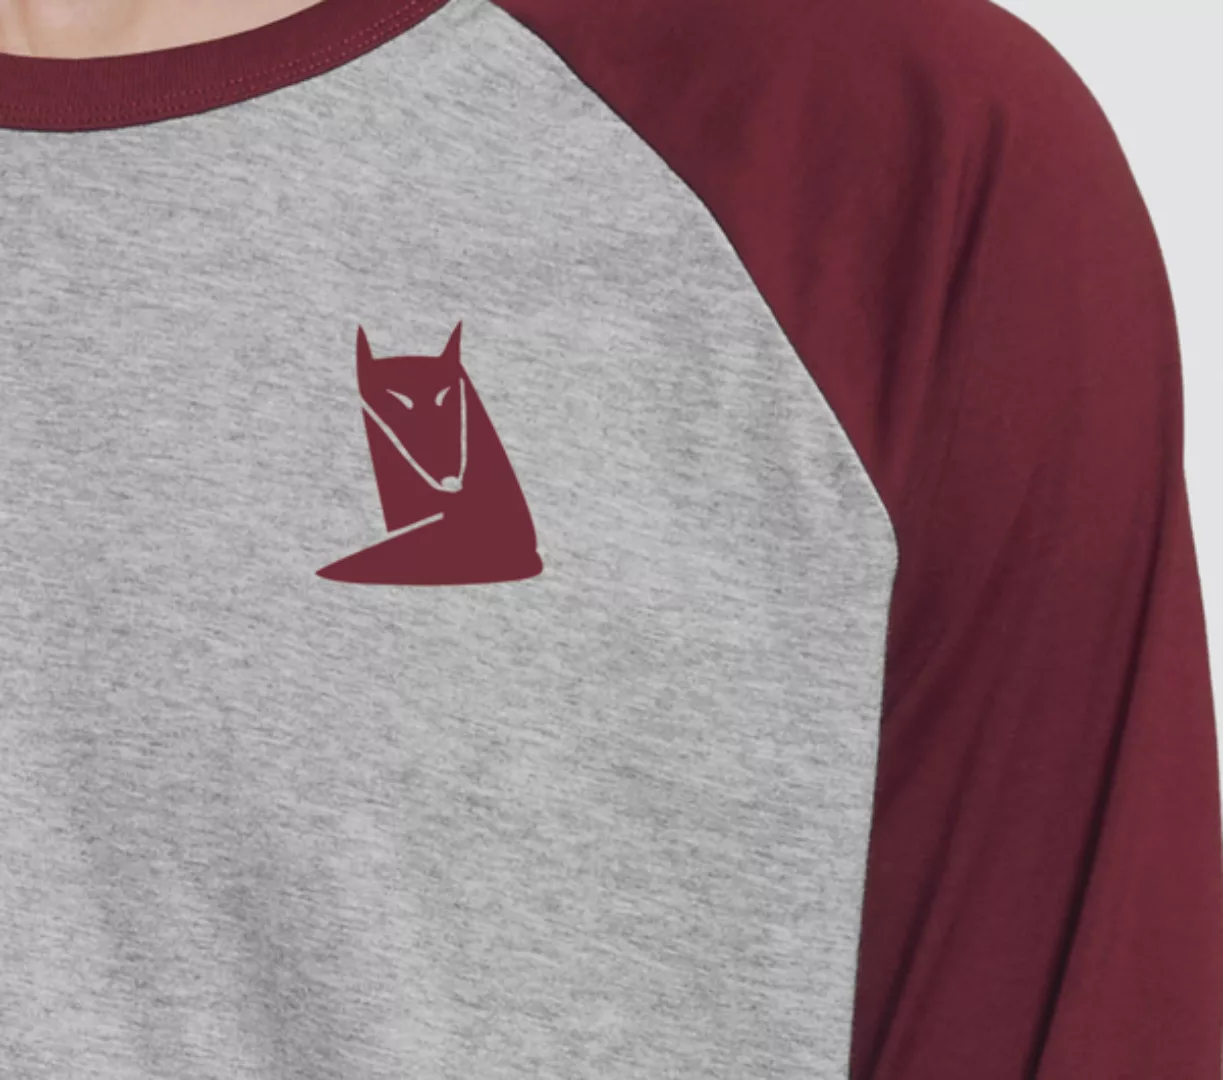 Herren Langarm-t-shirt, "Fuchs", Heather Grey/burgundy günstig online kaufen